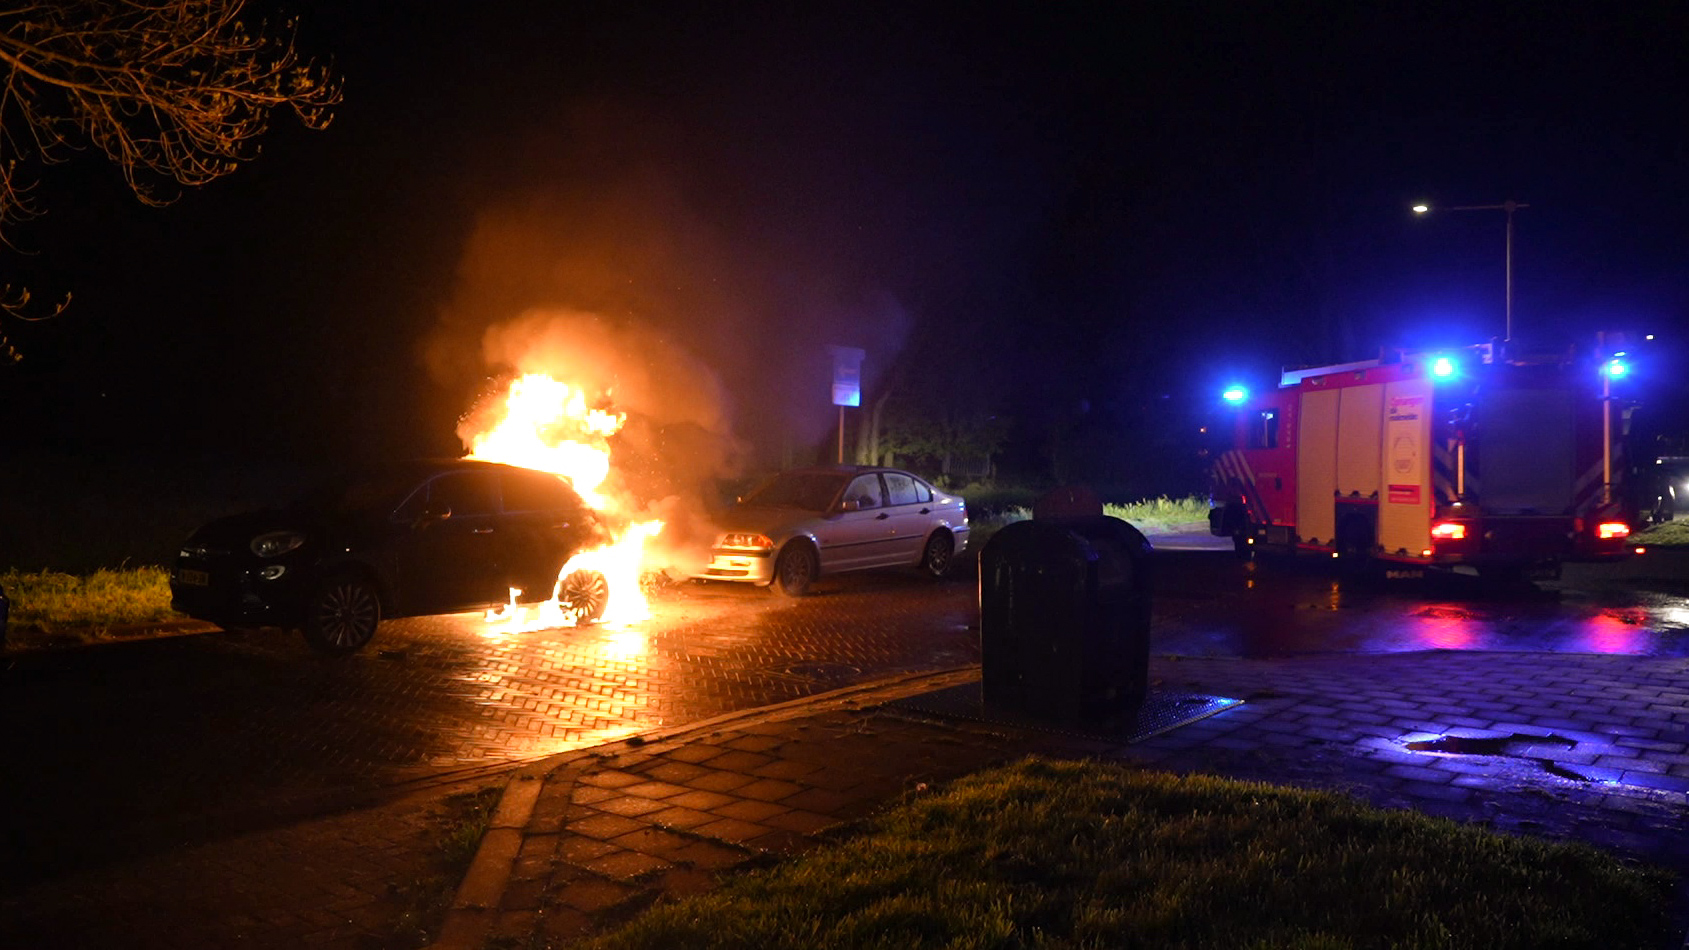 Opnieuw autobrand in Arnhemse wijk Malburgen, vierde auto in vijf dagen